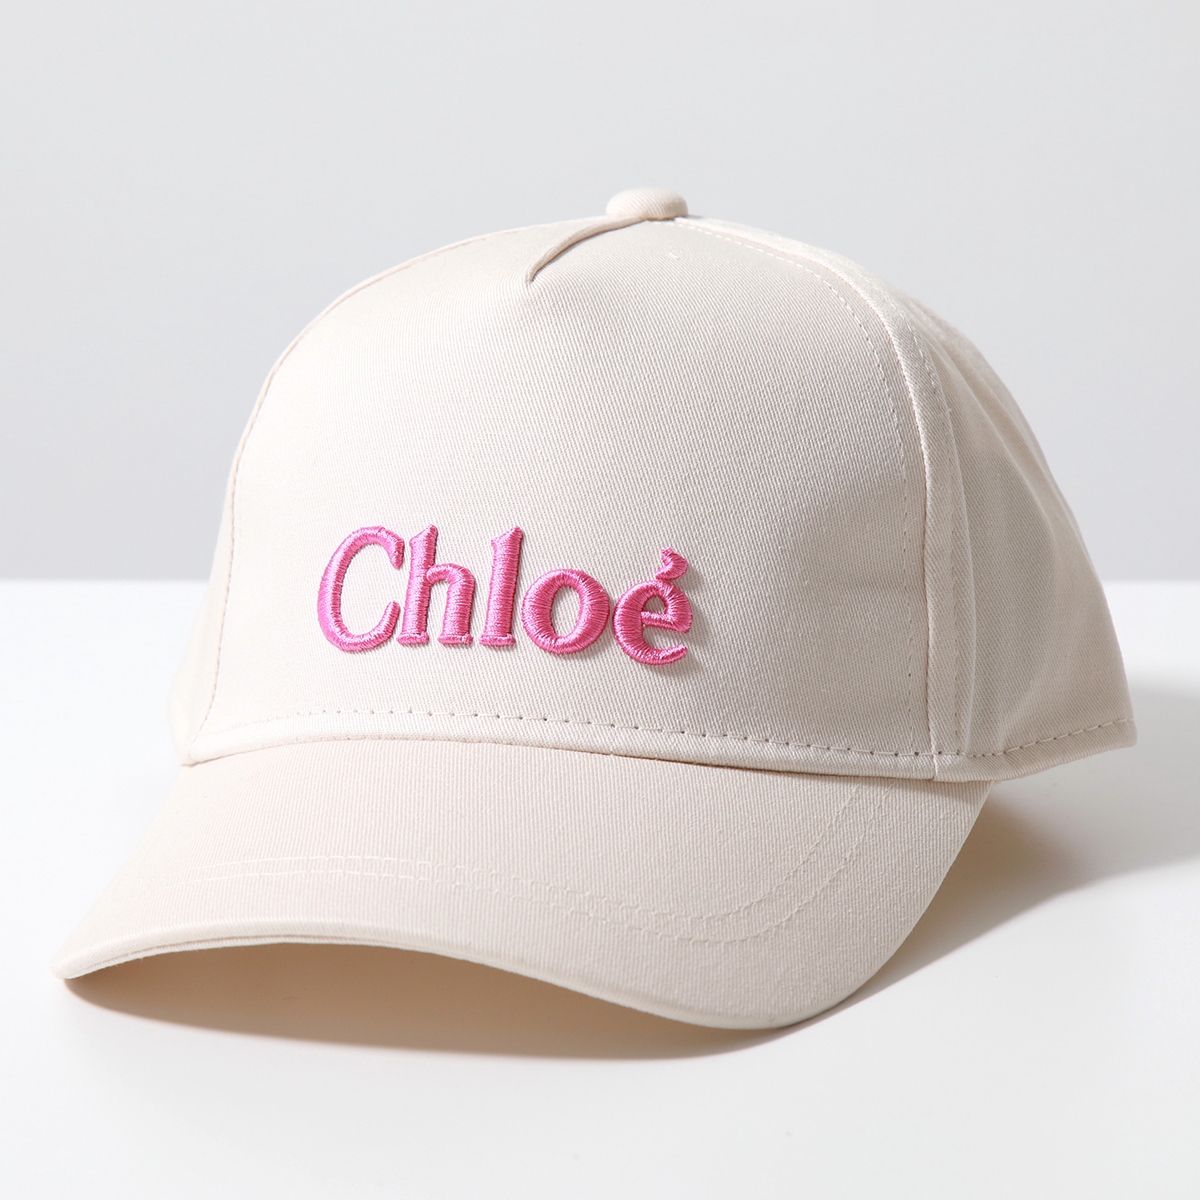 Chloe Kids クロエ キッズ べースボールキャップ HEADWEAR ACCESSORY C20049 C20183 レディース ガールズ  ロゴ刺繍 帽子 カラー2色